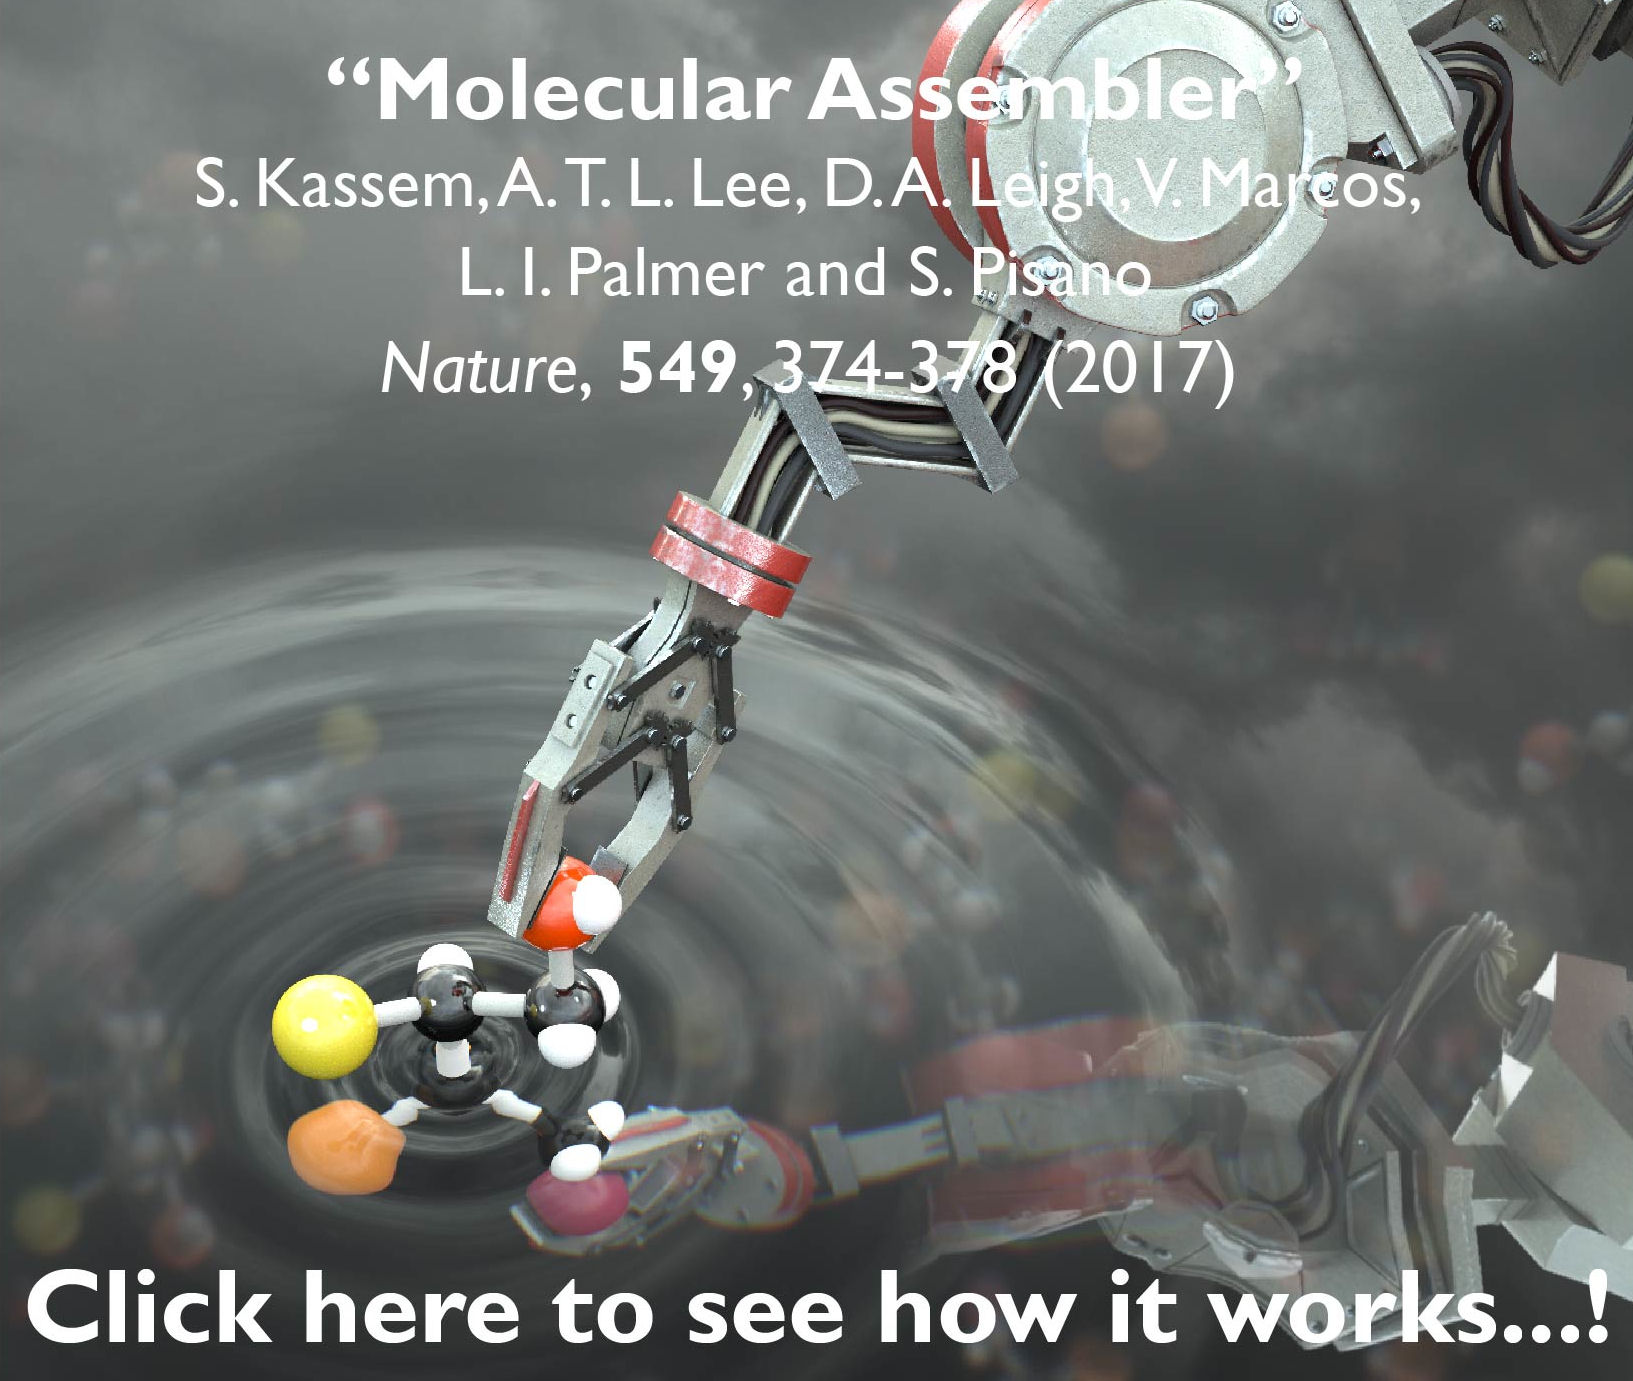 A Molecular Assembler